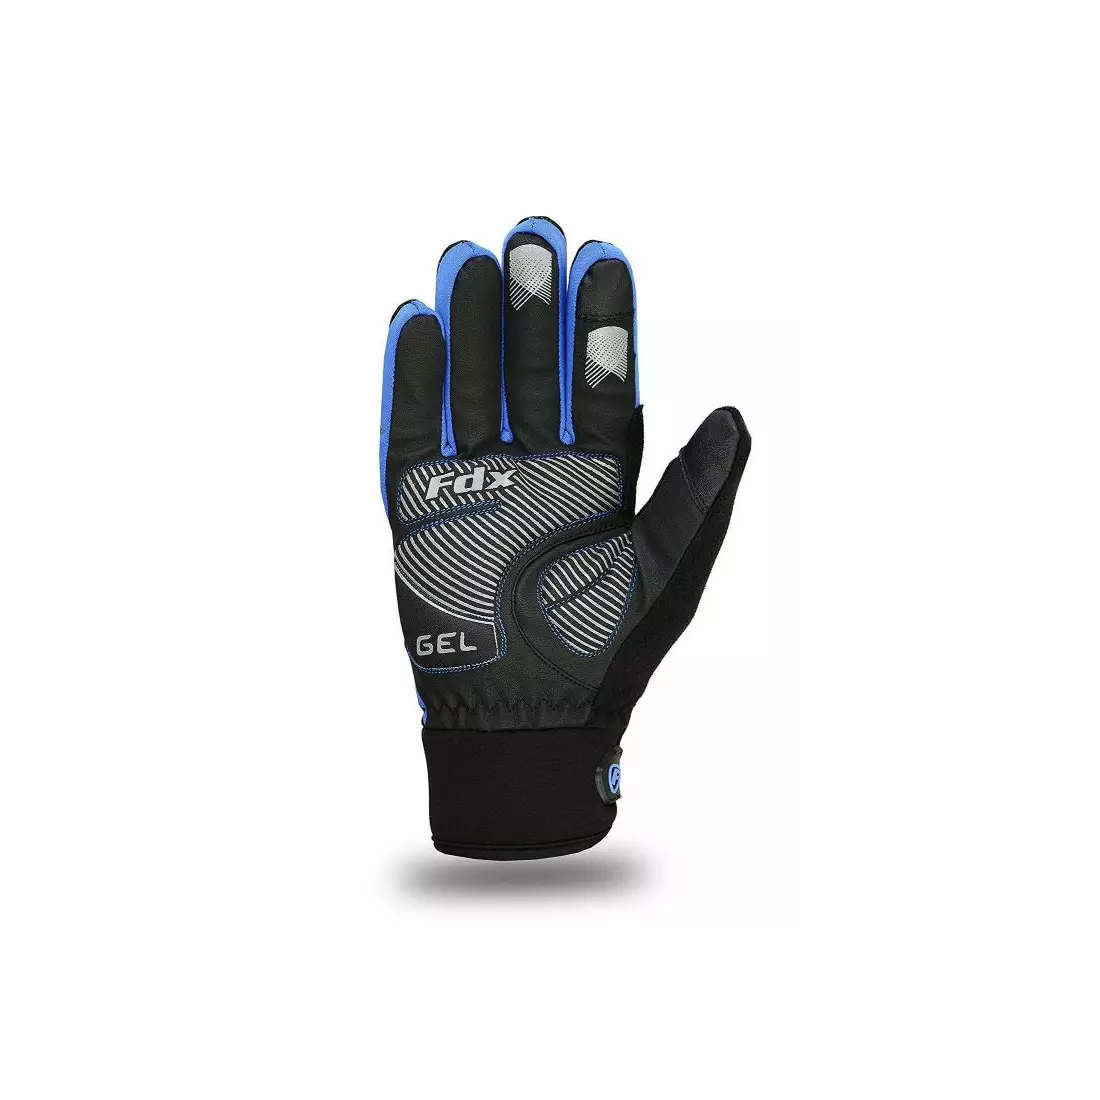 FDX 1901 Full Finger winter cycling gloves black-blue